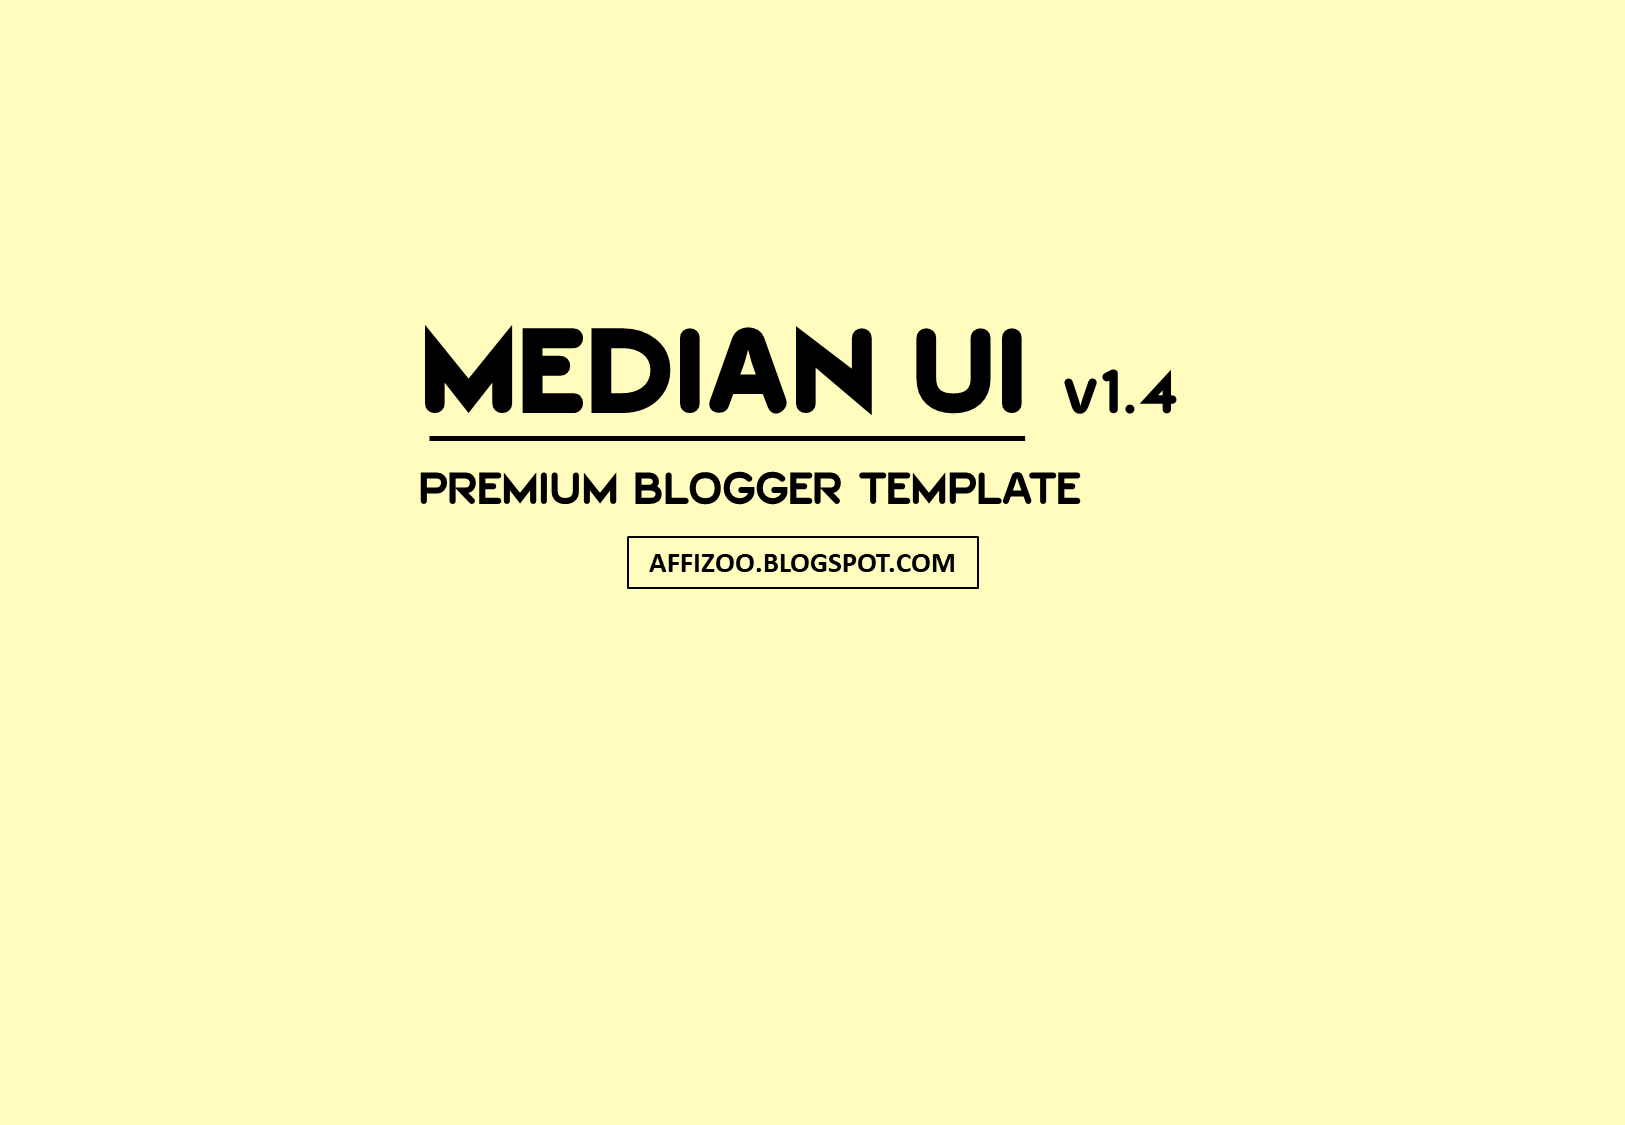 [Free] Median UI v1.4 Premium Blogger Template Download